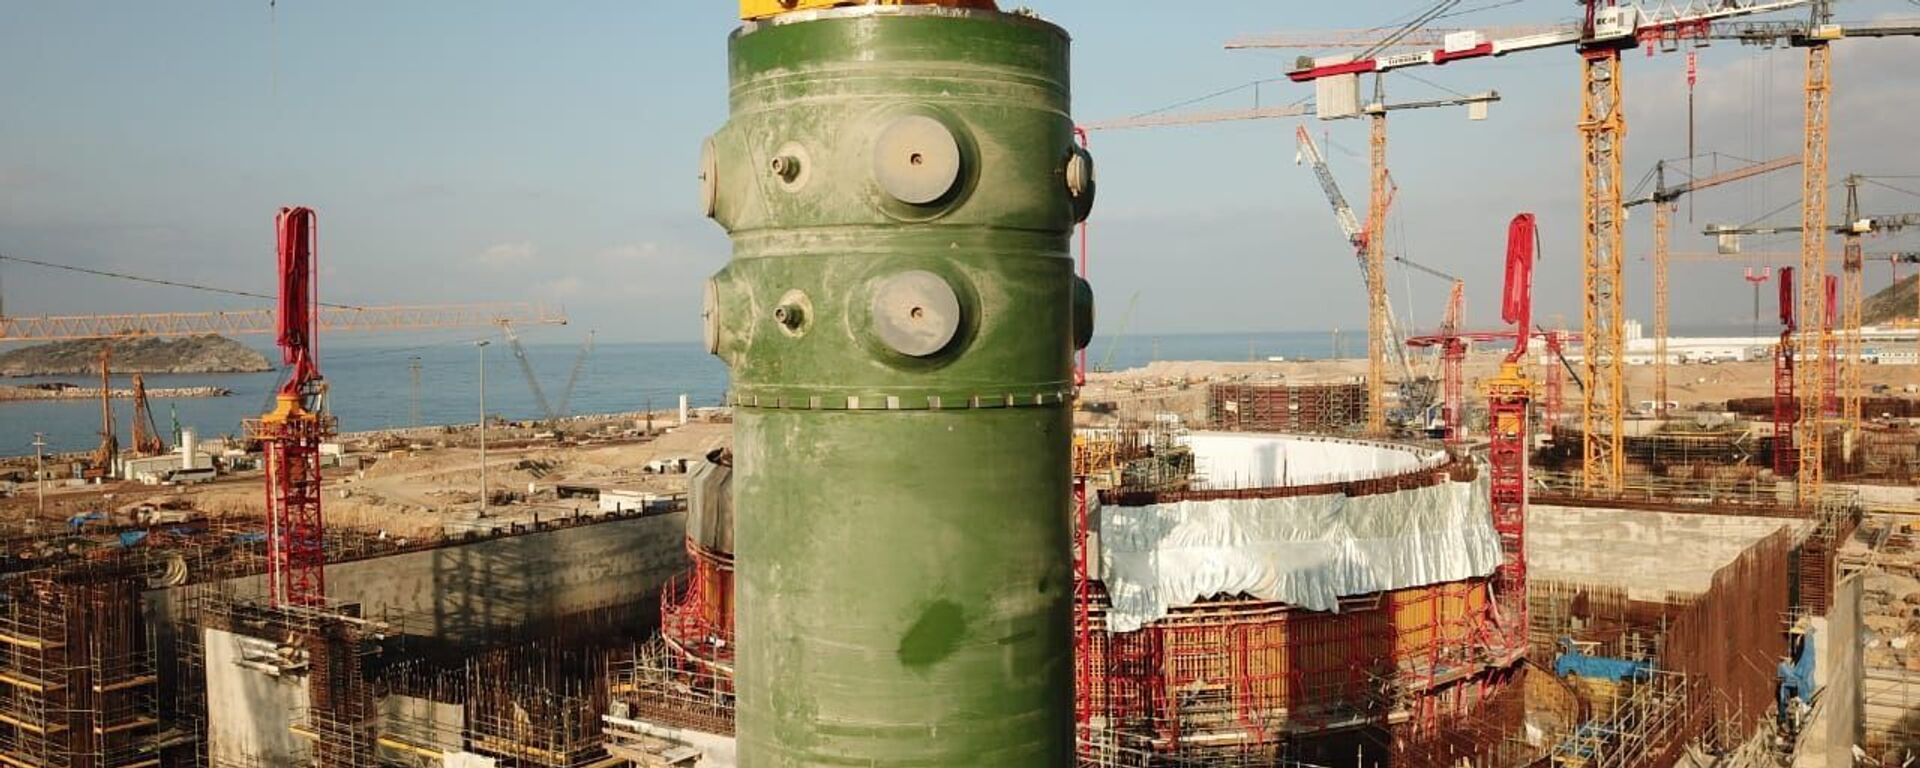 Akkuyu Nükleer Güç Santrali’nde birinci ünitenin reaktör kabı - Sputnik Türkiye, 1920, 20.01.2022